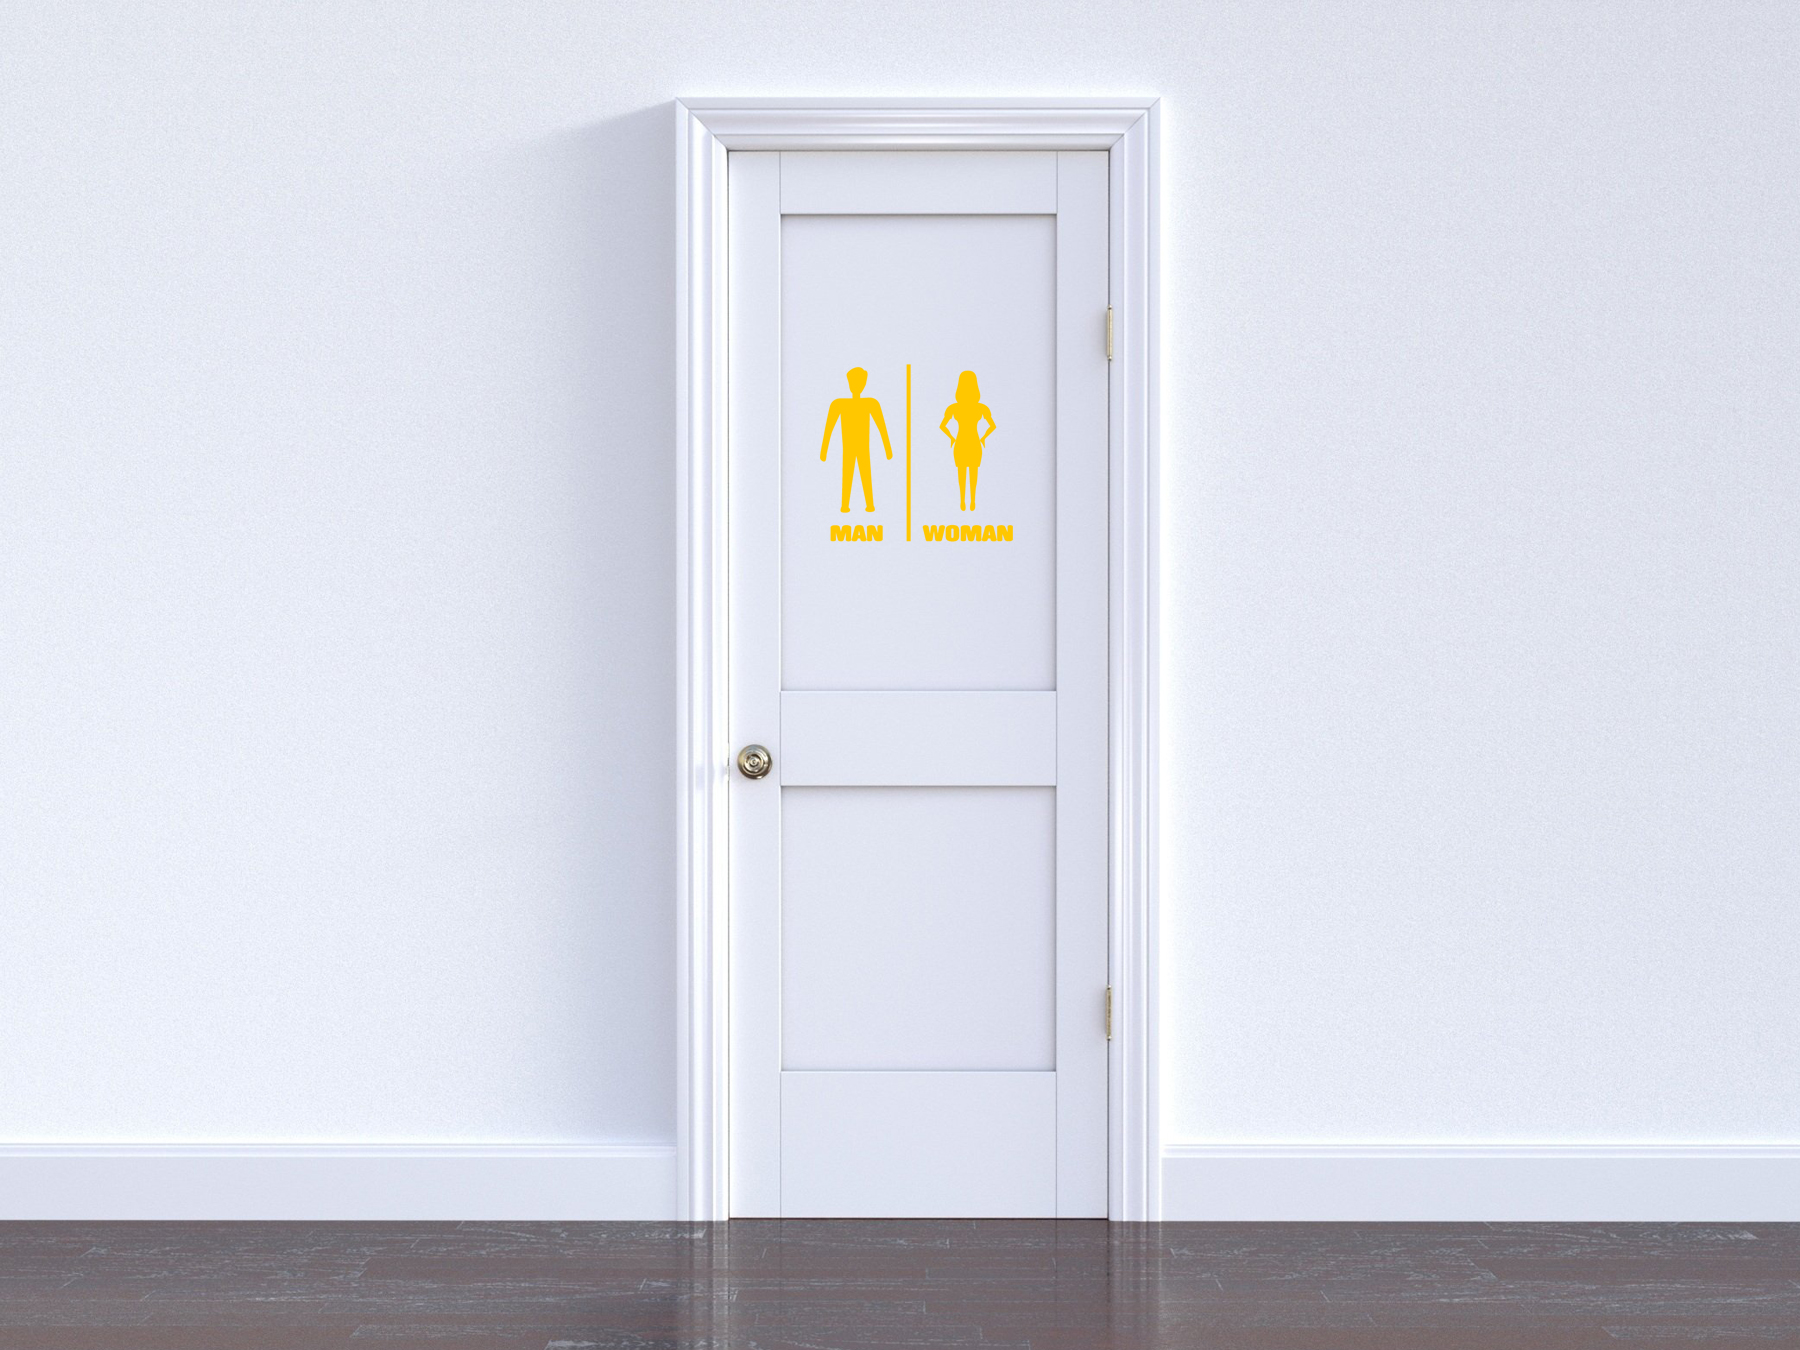 Toiletten Aufkleber | Maennlich + Weiblich Hinweis | Man Woman gelb